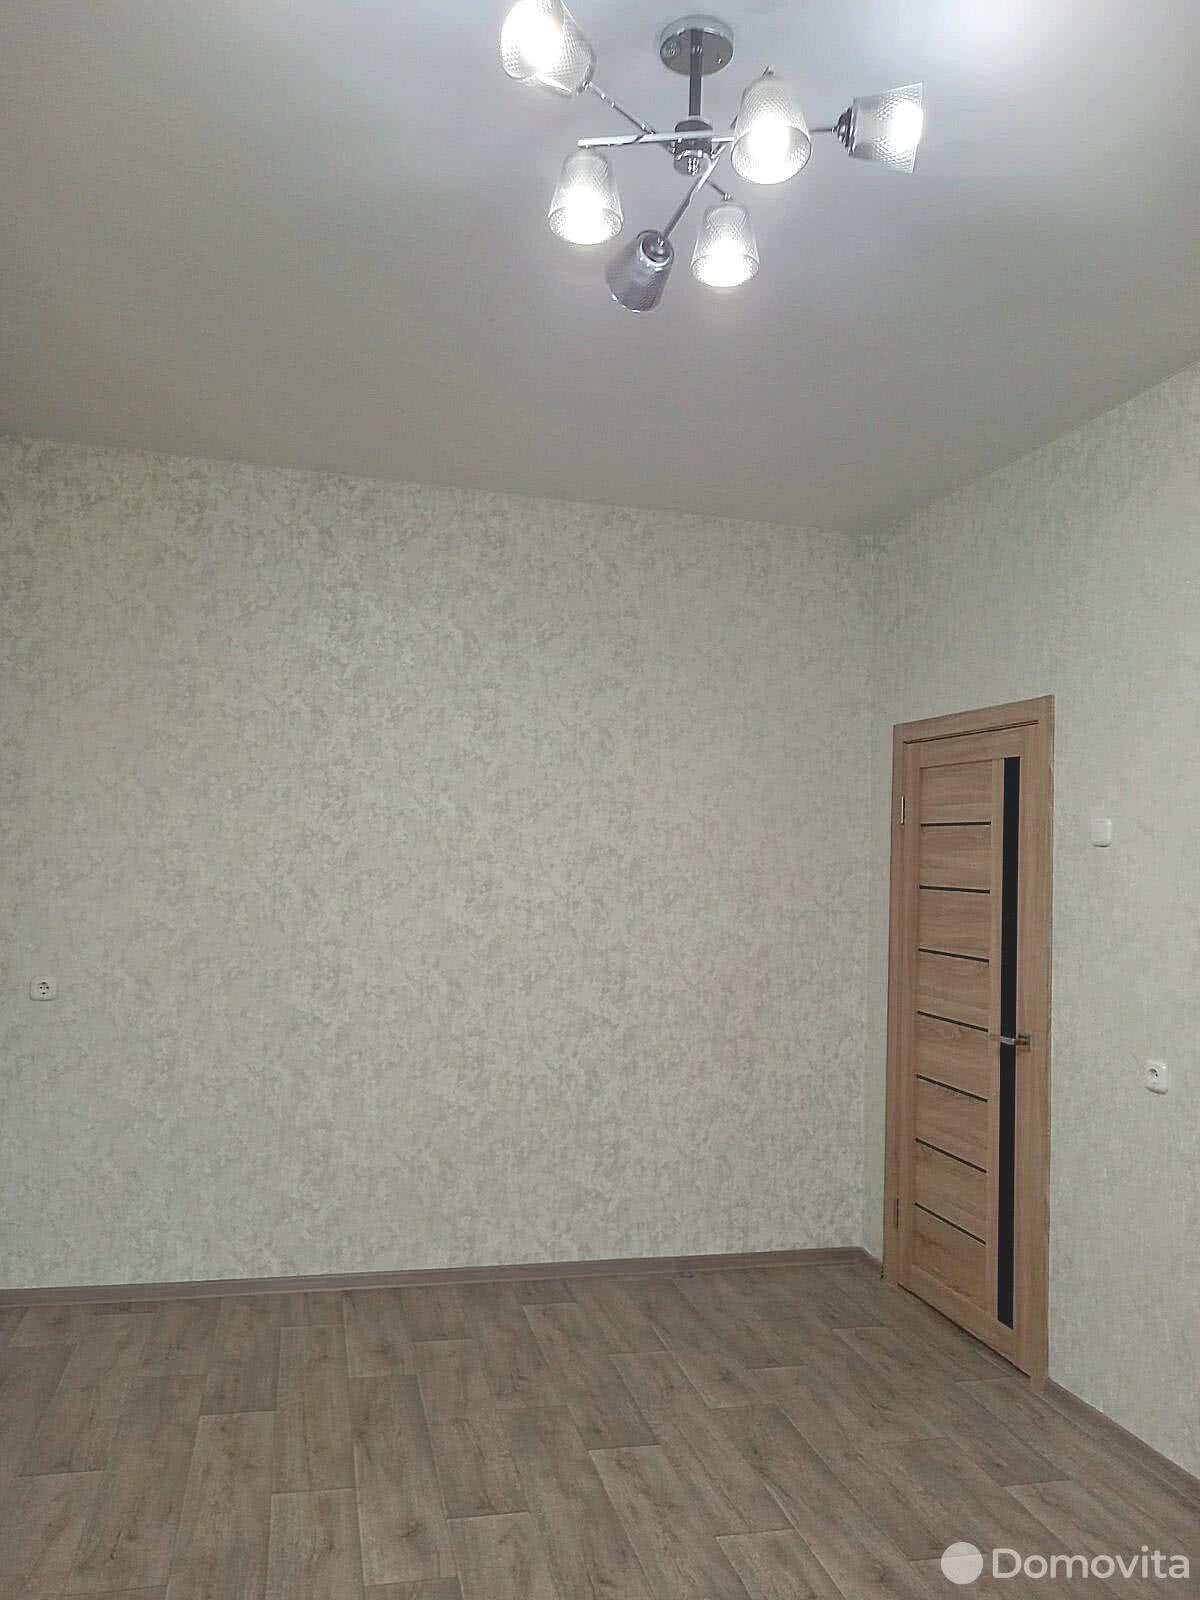 квартира, Минск, ул. Челюскинцев, д. 8, стоимость аренды 866 р./мес.